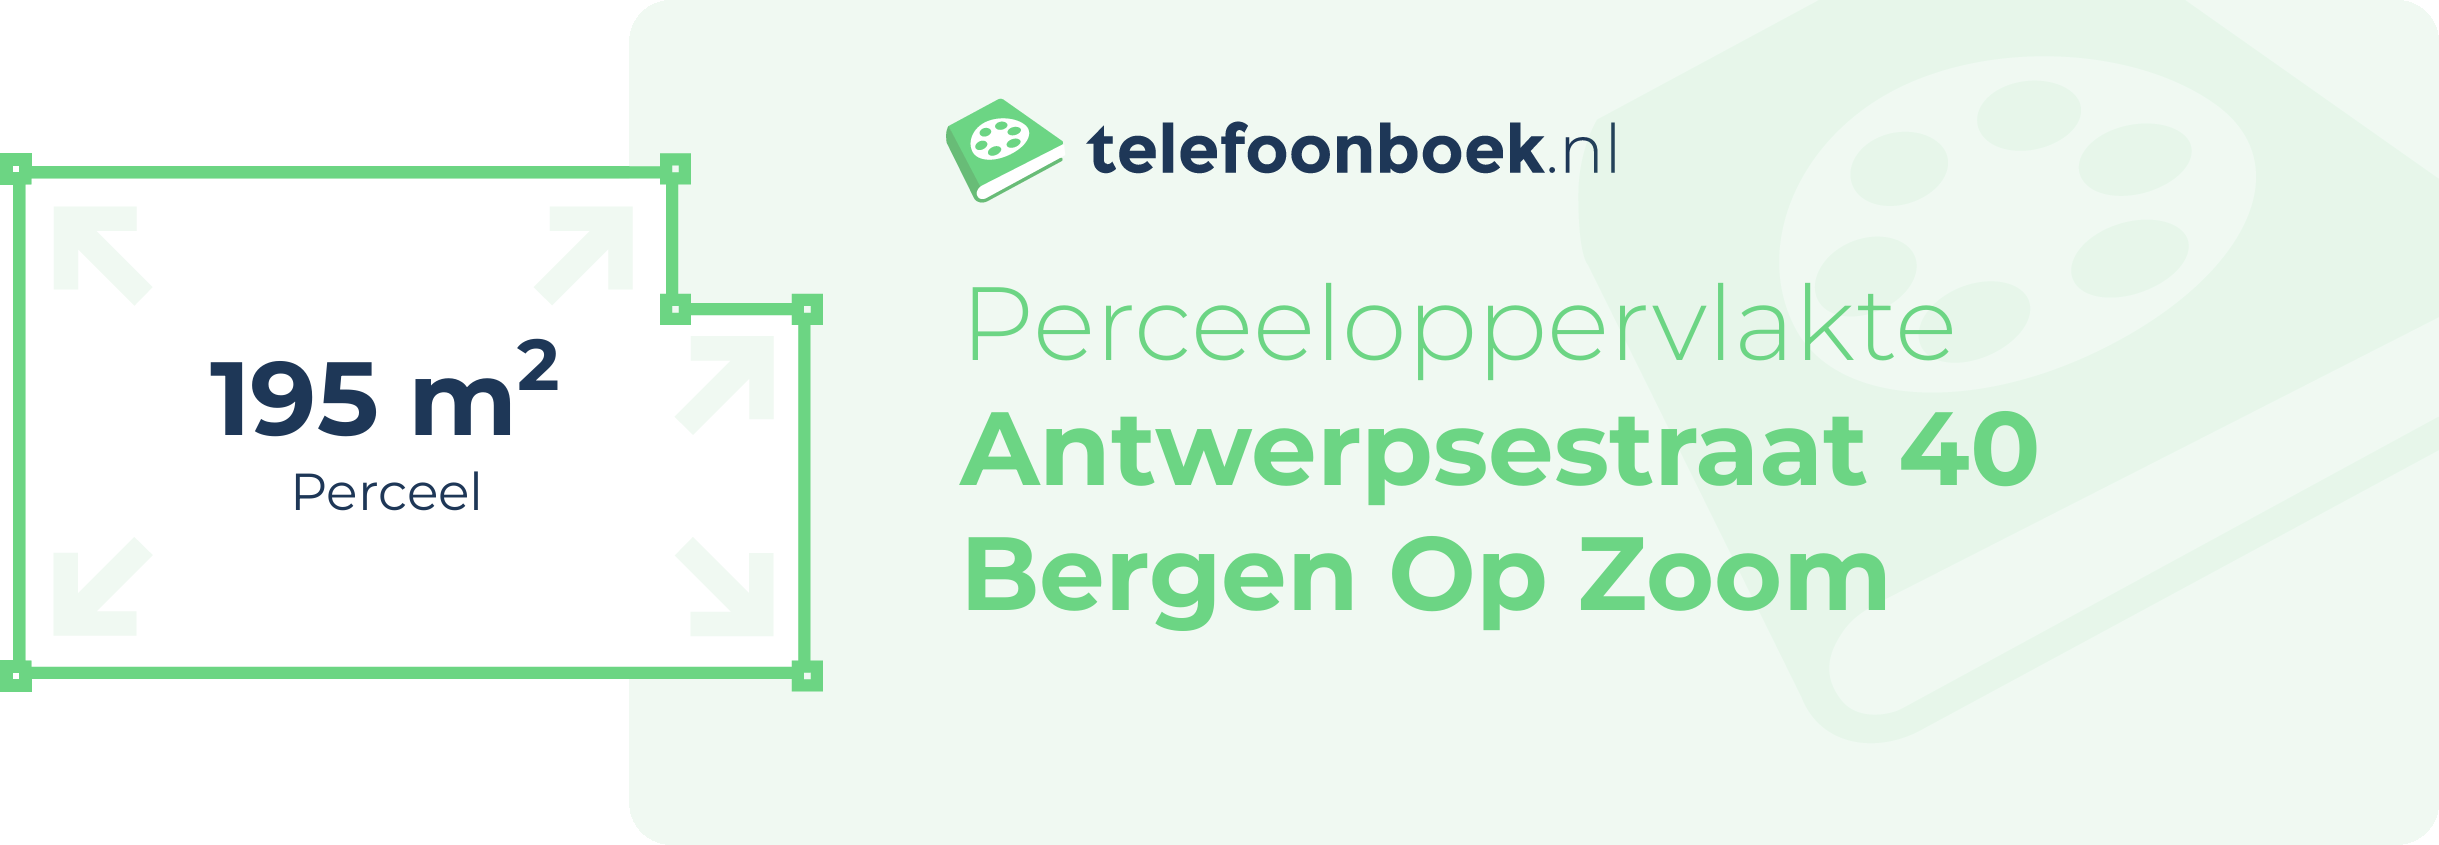 Perceeloppervlakte Antwerpsestraat 40 Bergen Op Zoom